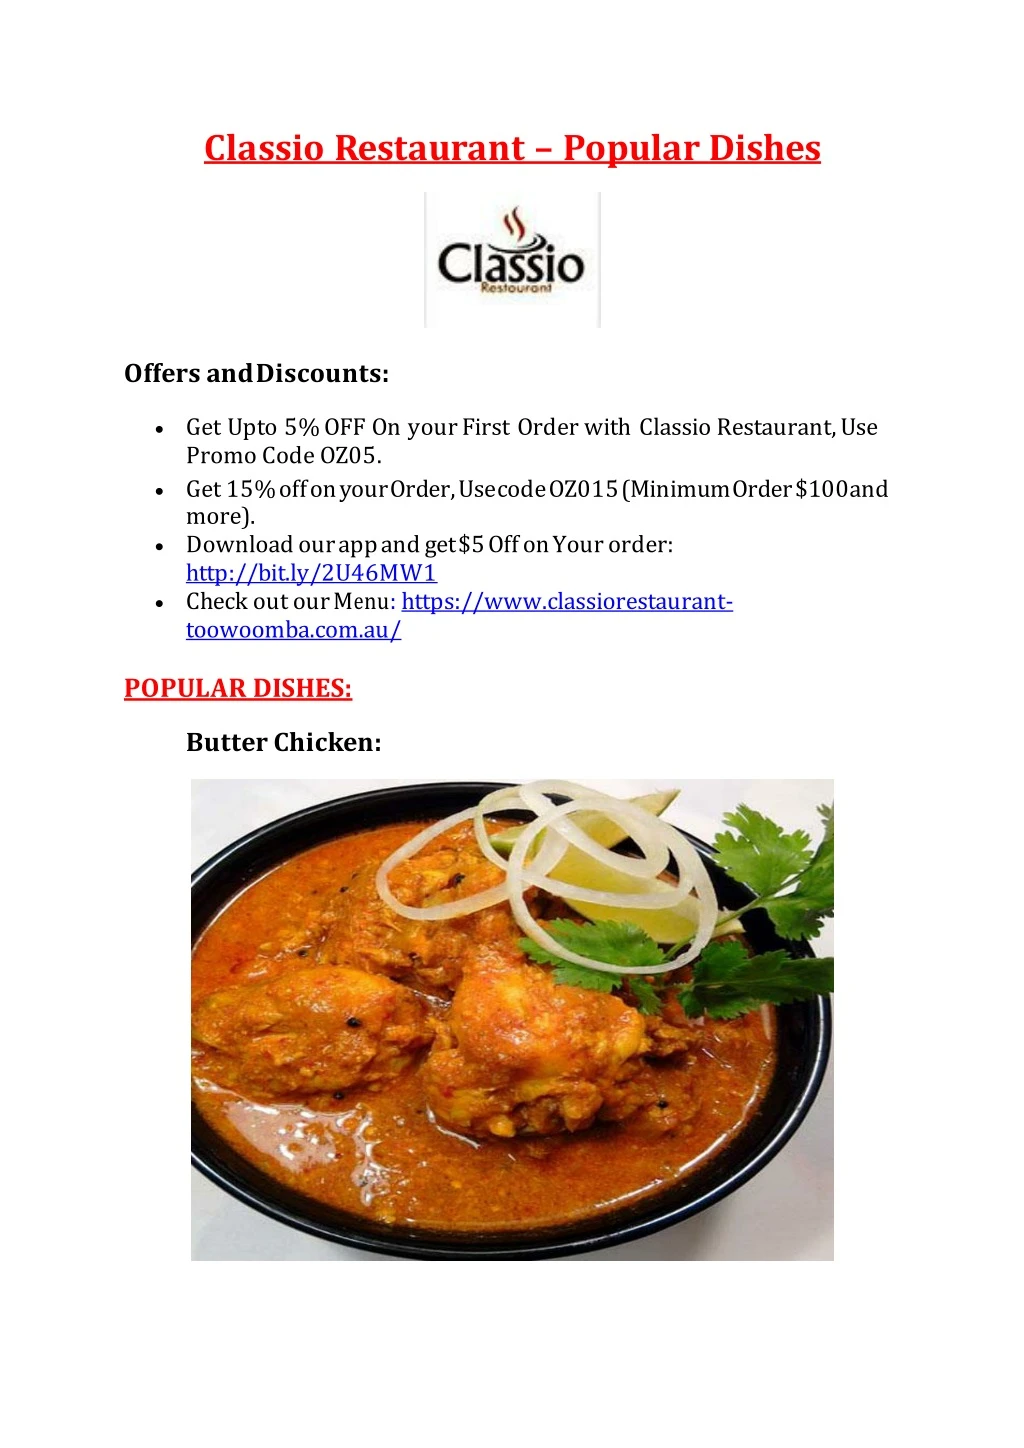 classio restaurant popular dishes